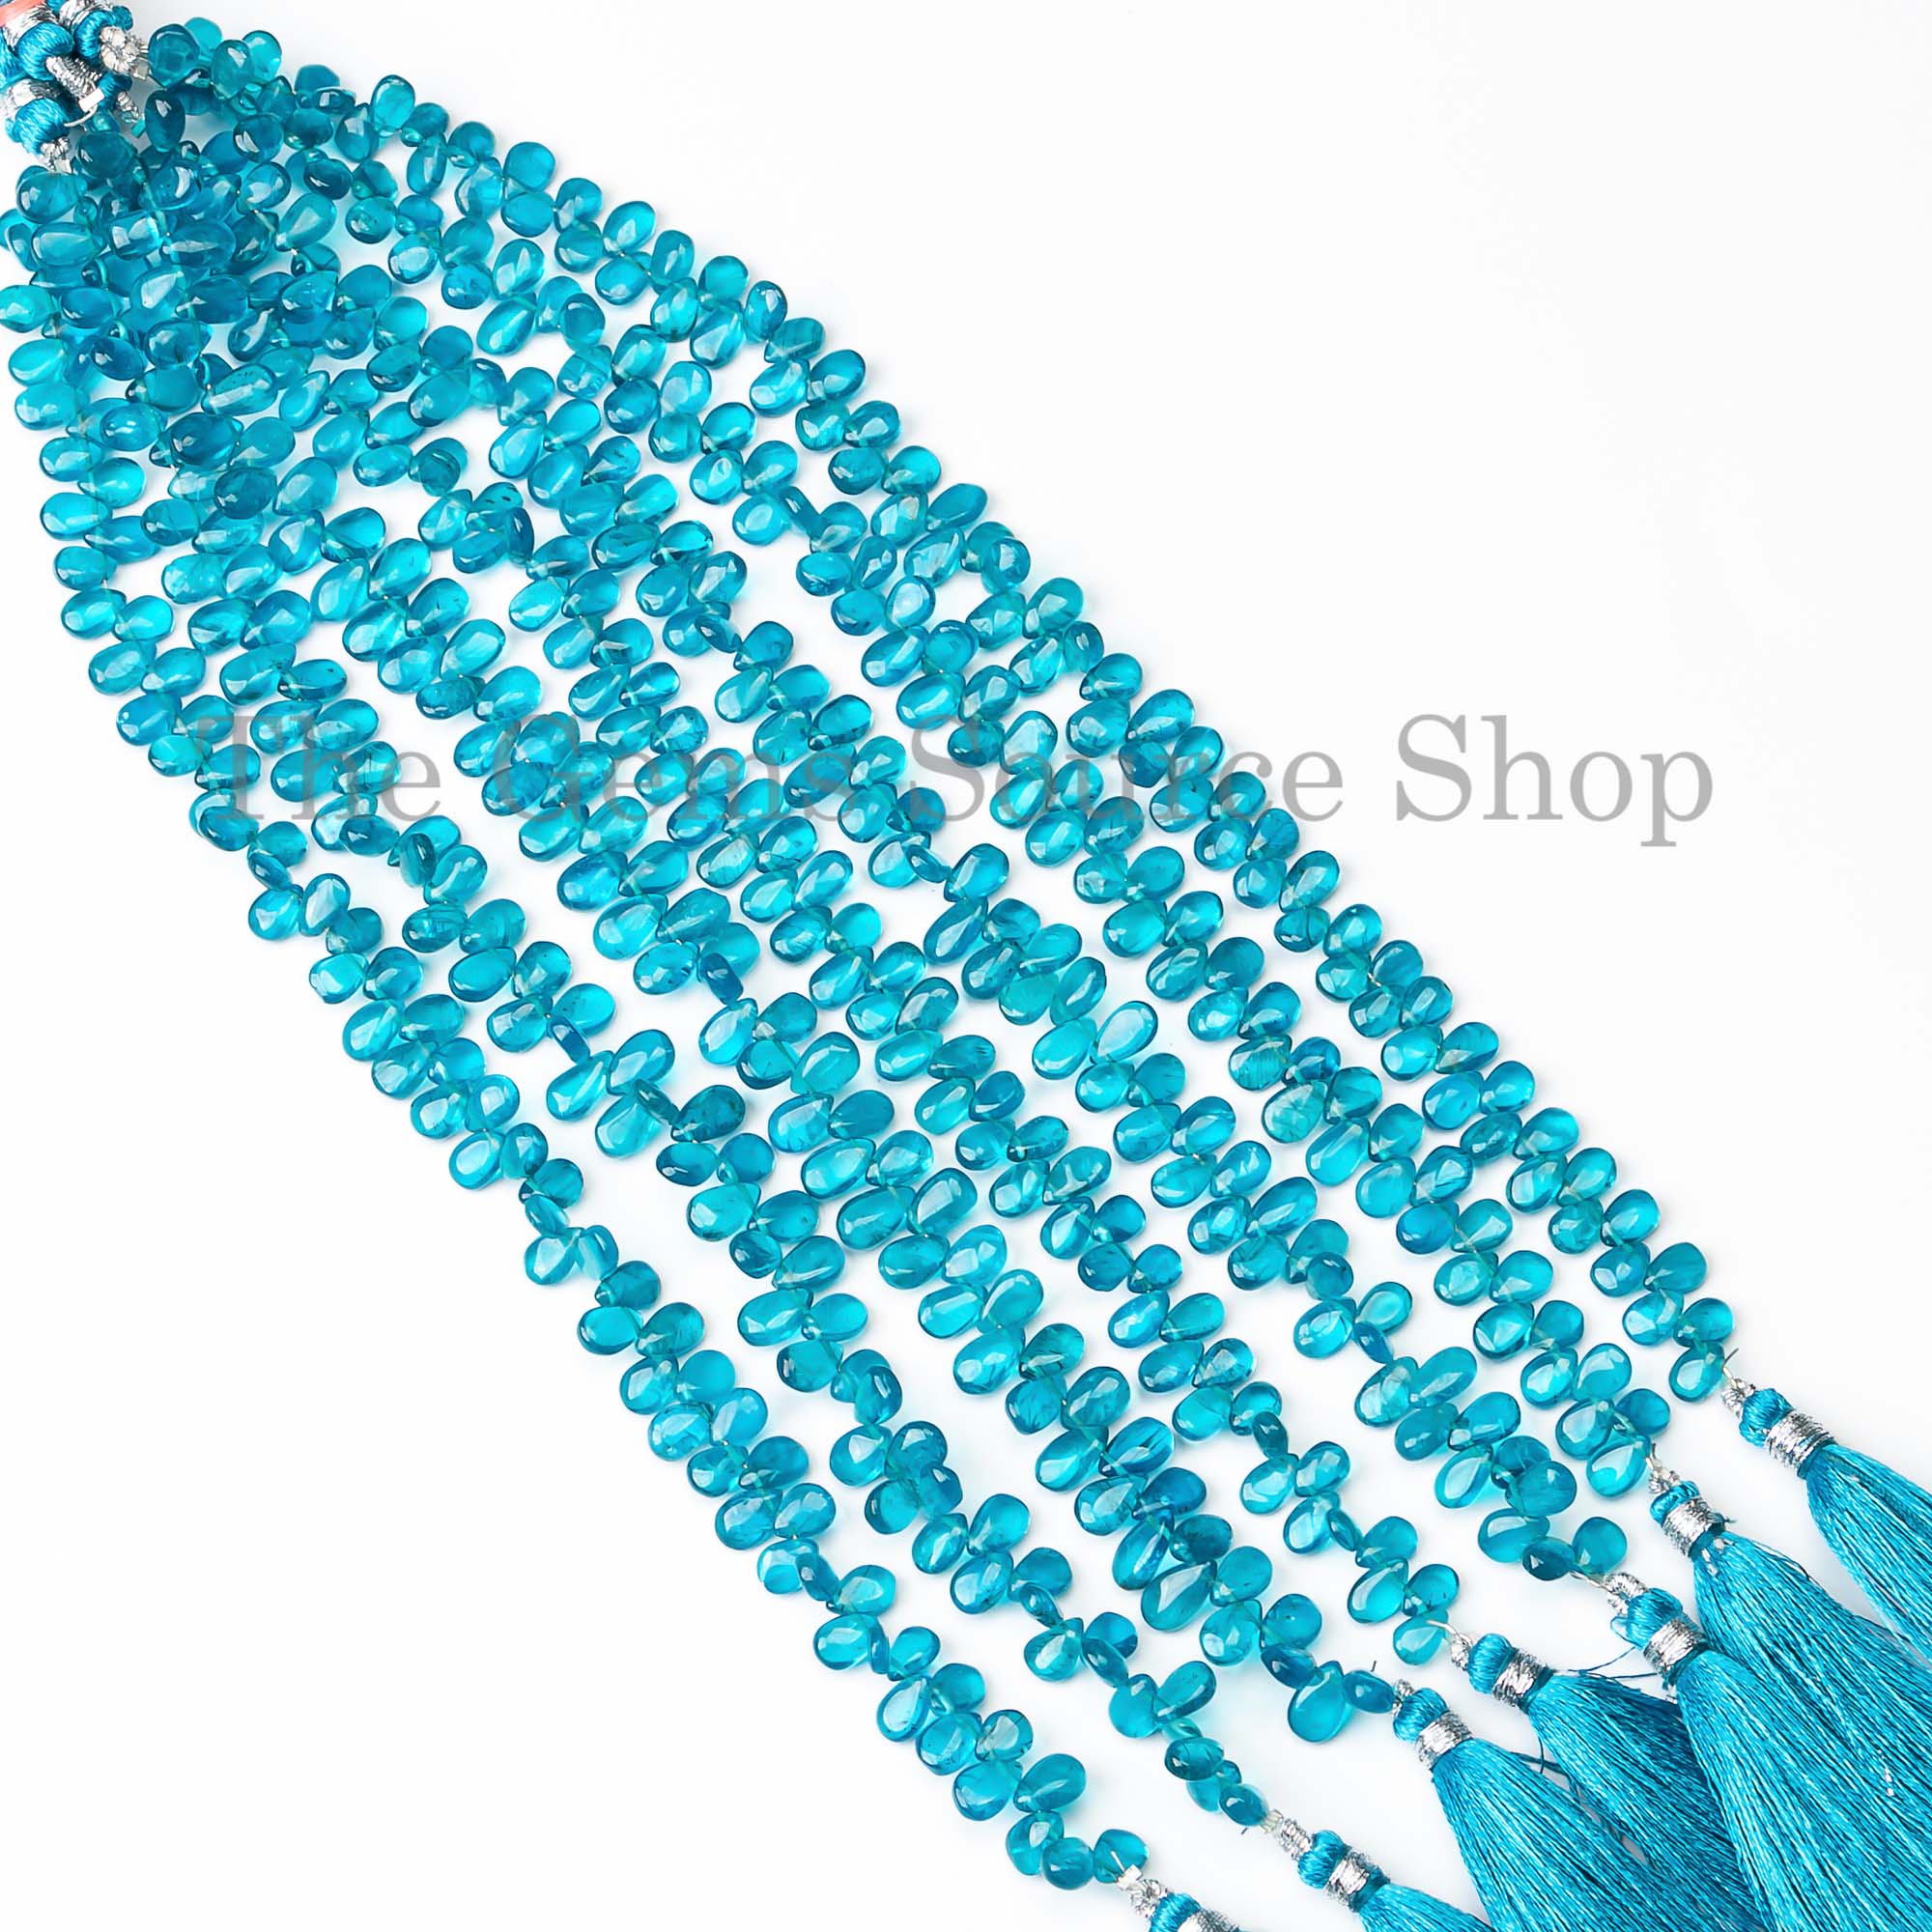 Neon Apatite Beads, Smooth Apatite Beads, Plain Pear Shape Beads, Apatite Gemstone Beads